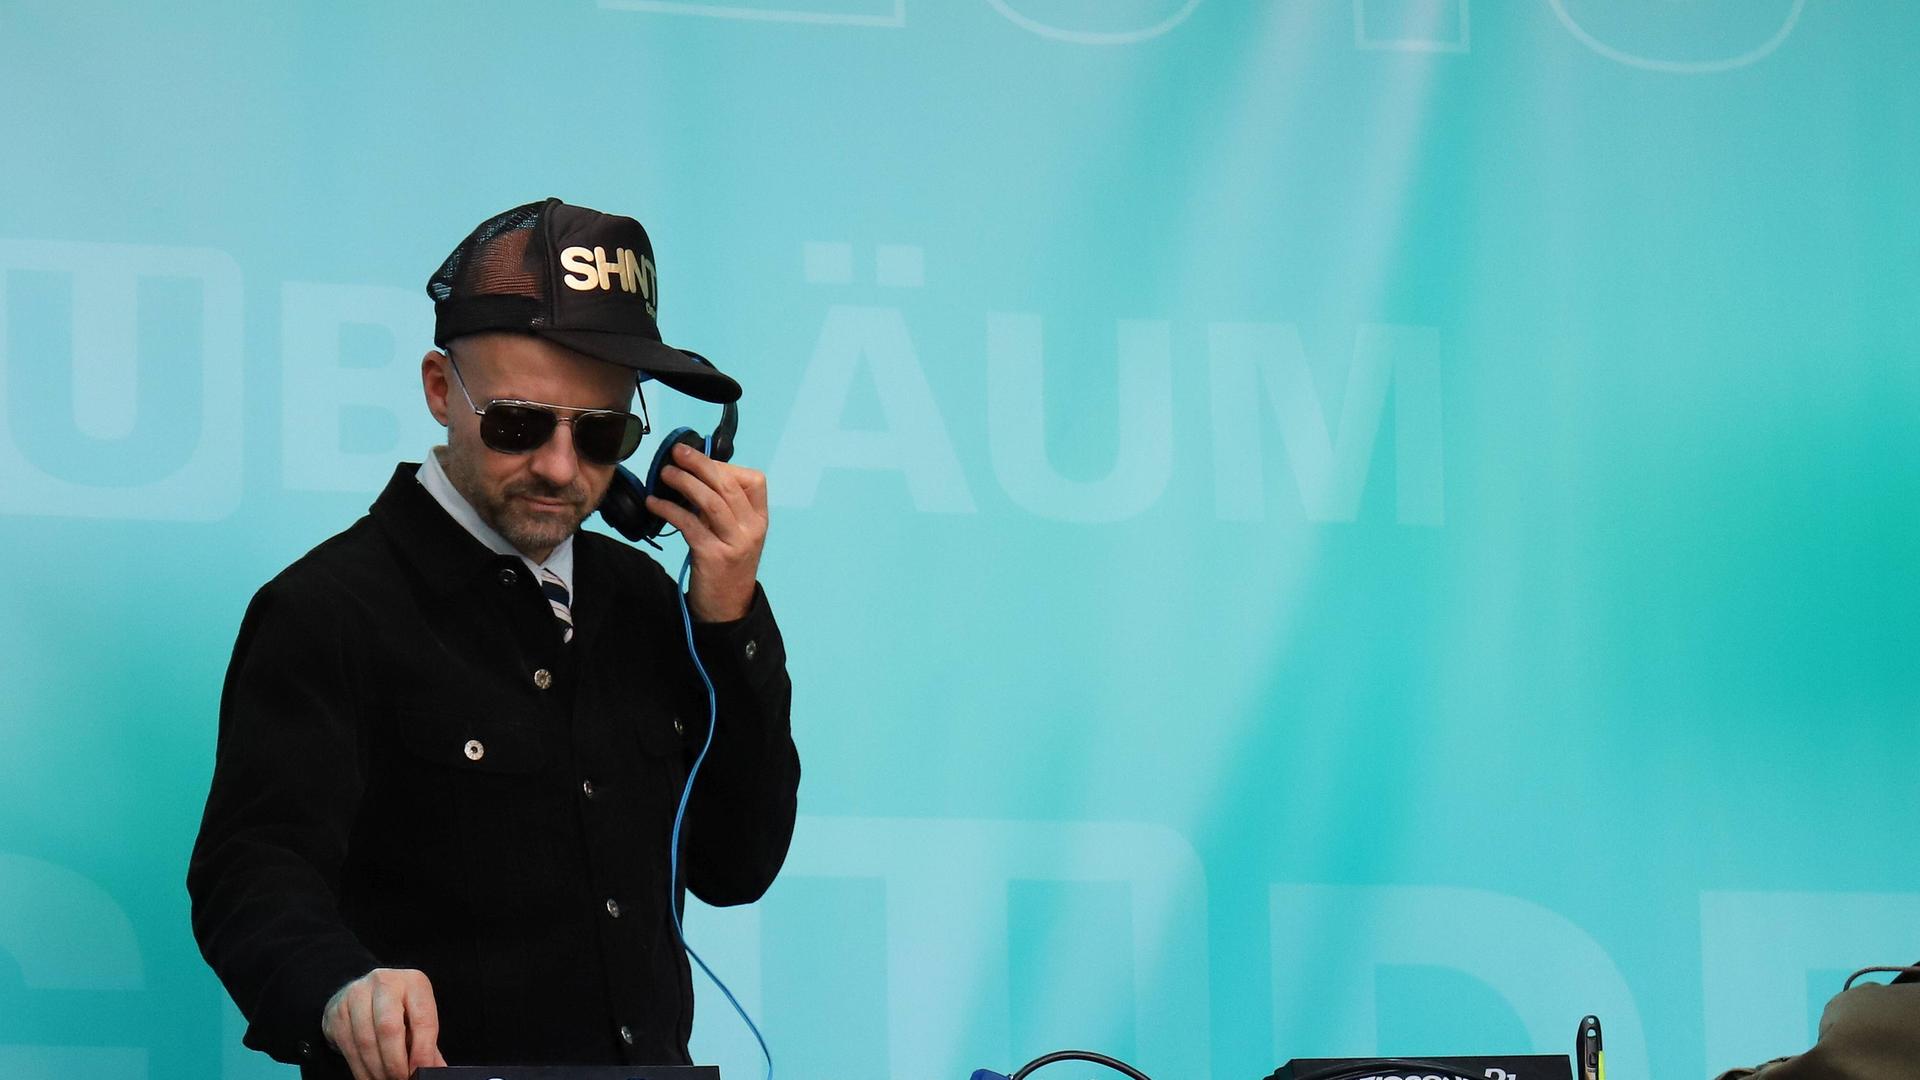  Stefan Hantel am DJ-Pult (Archivbild)